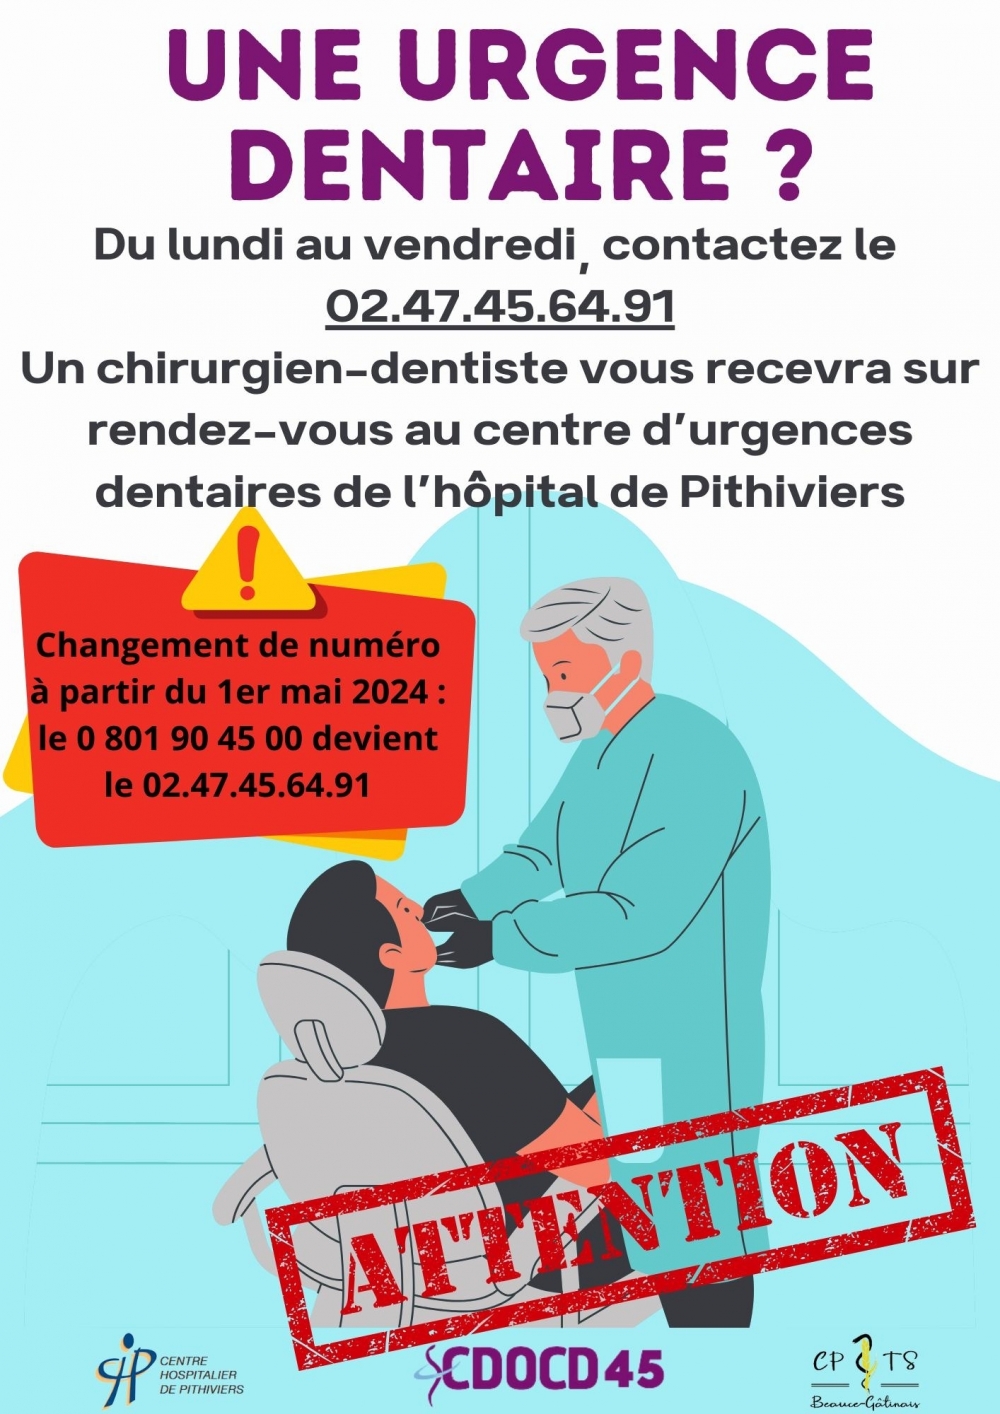 Urgence dentaire - Commune de Boynes